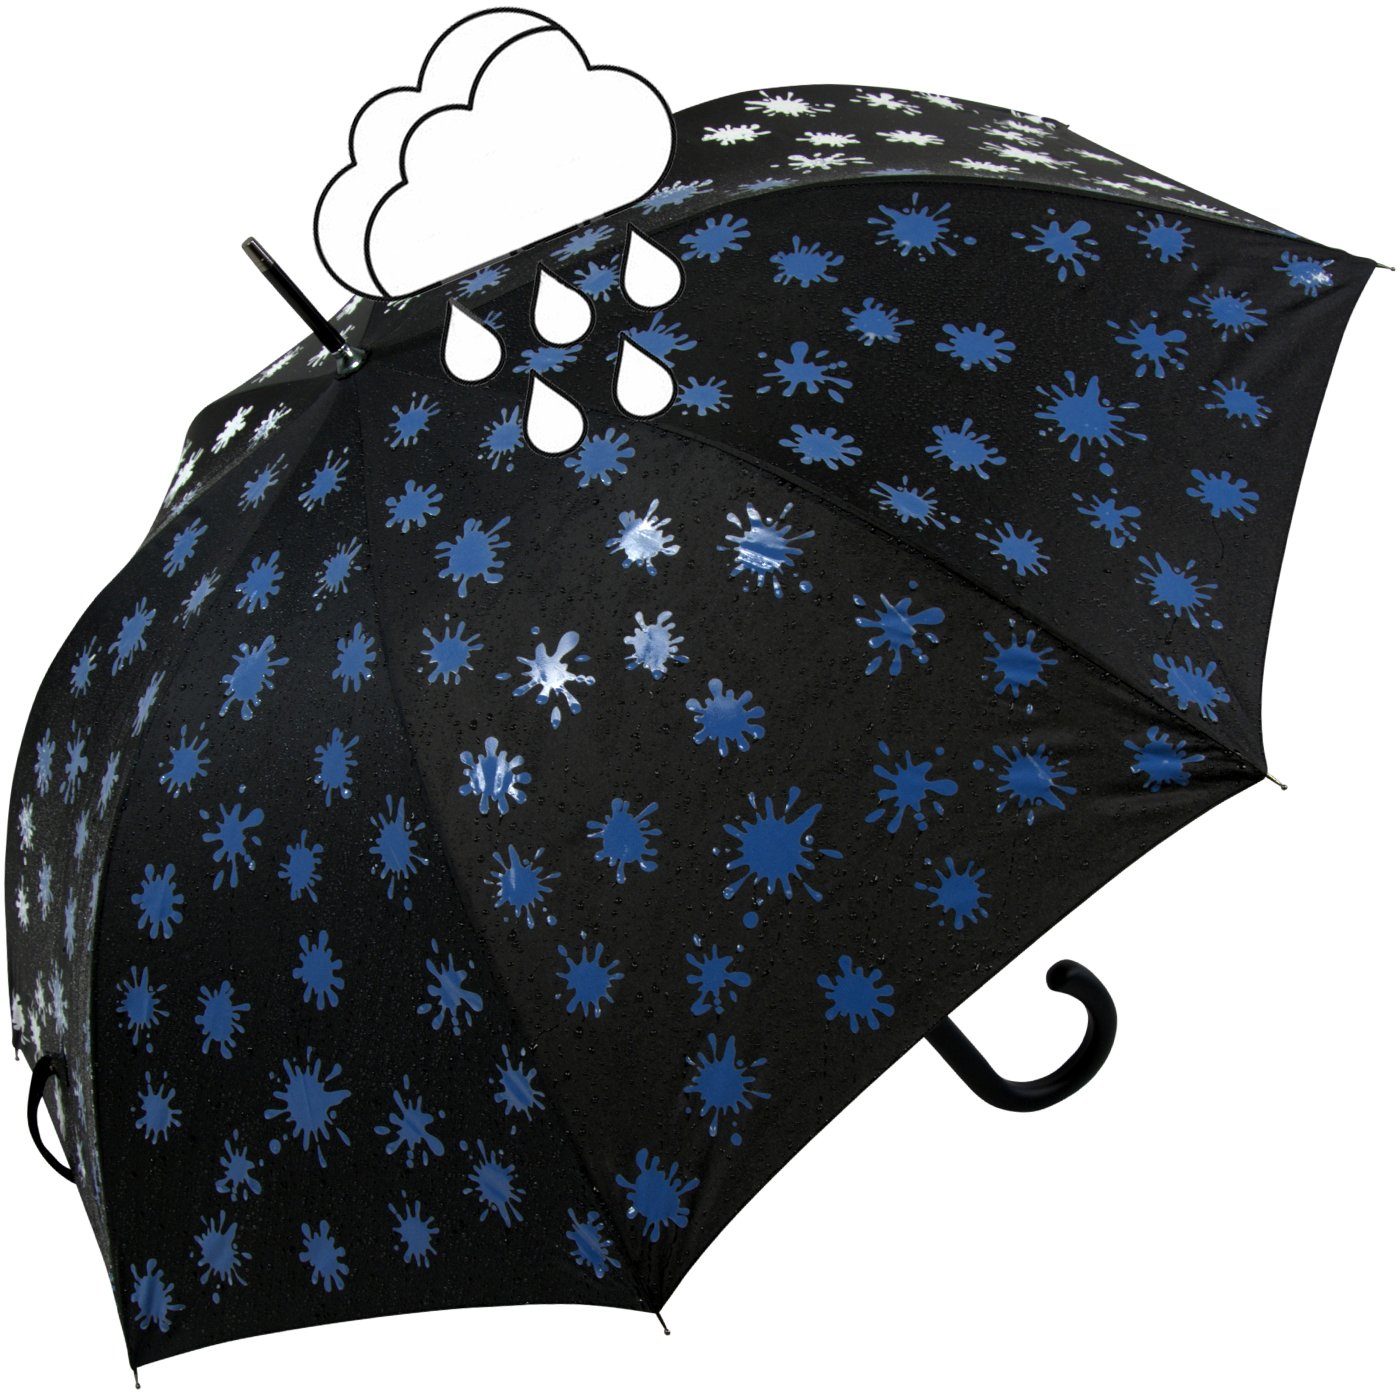 iX-brella blau Farbkleckse schwarz-weiß-blau bei Langregenschirm und Print, Automatik Wet - Farbänderung mit Damenschirm Nässe iX-brella